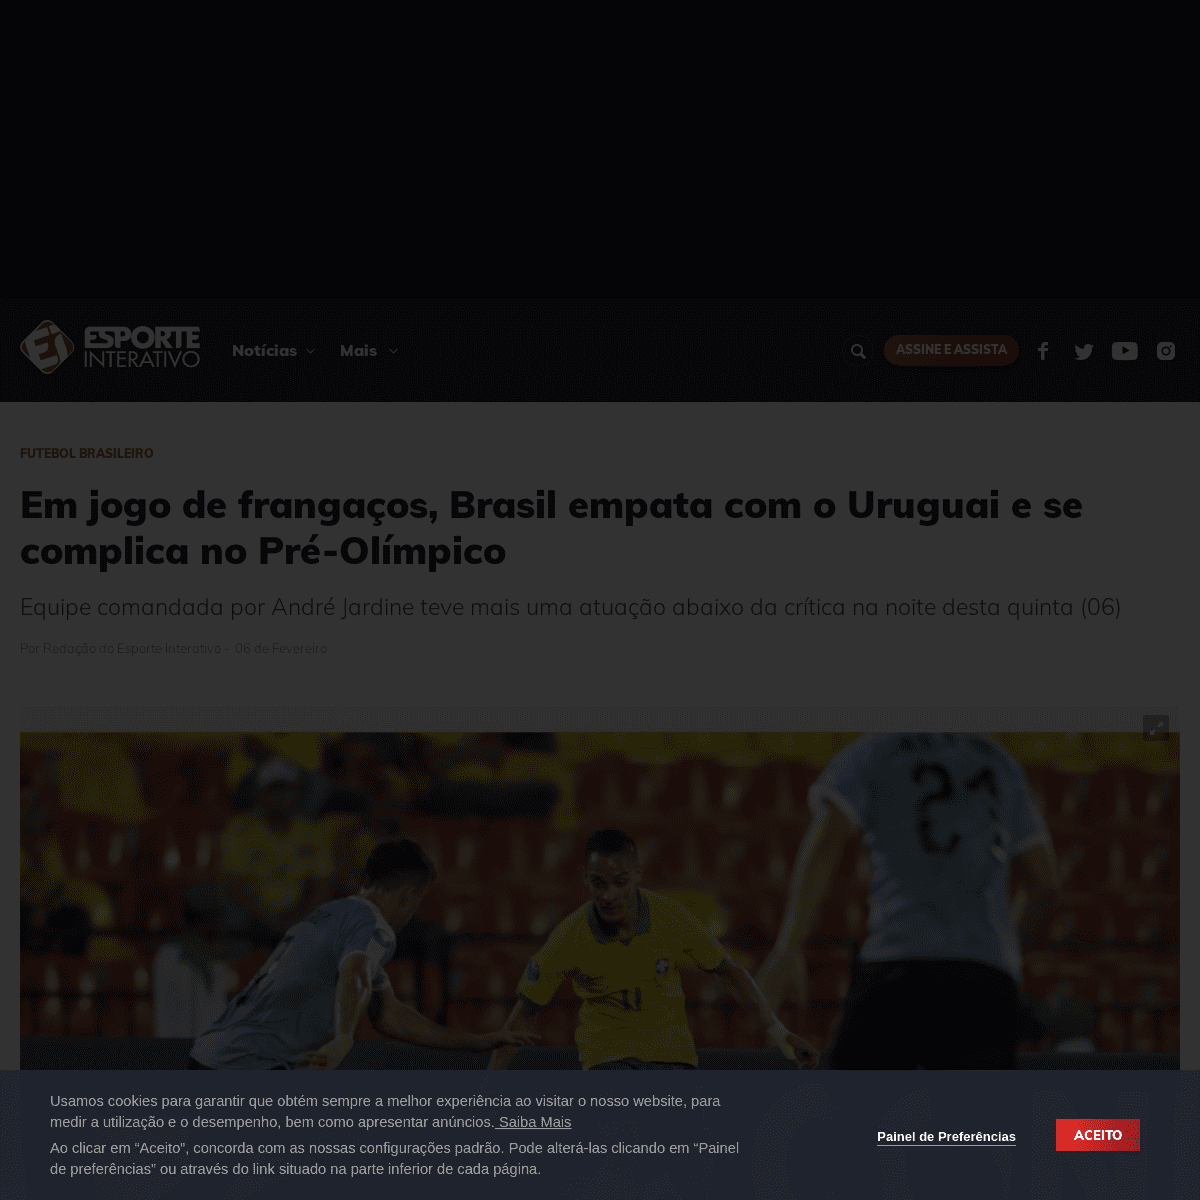 A complete backup of www.esporteinterativo.com.br/futebolbrasileiro/Em-jogo-de-frangaos-Brasil-empata-com-o-Uruguai-e-se-complic